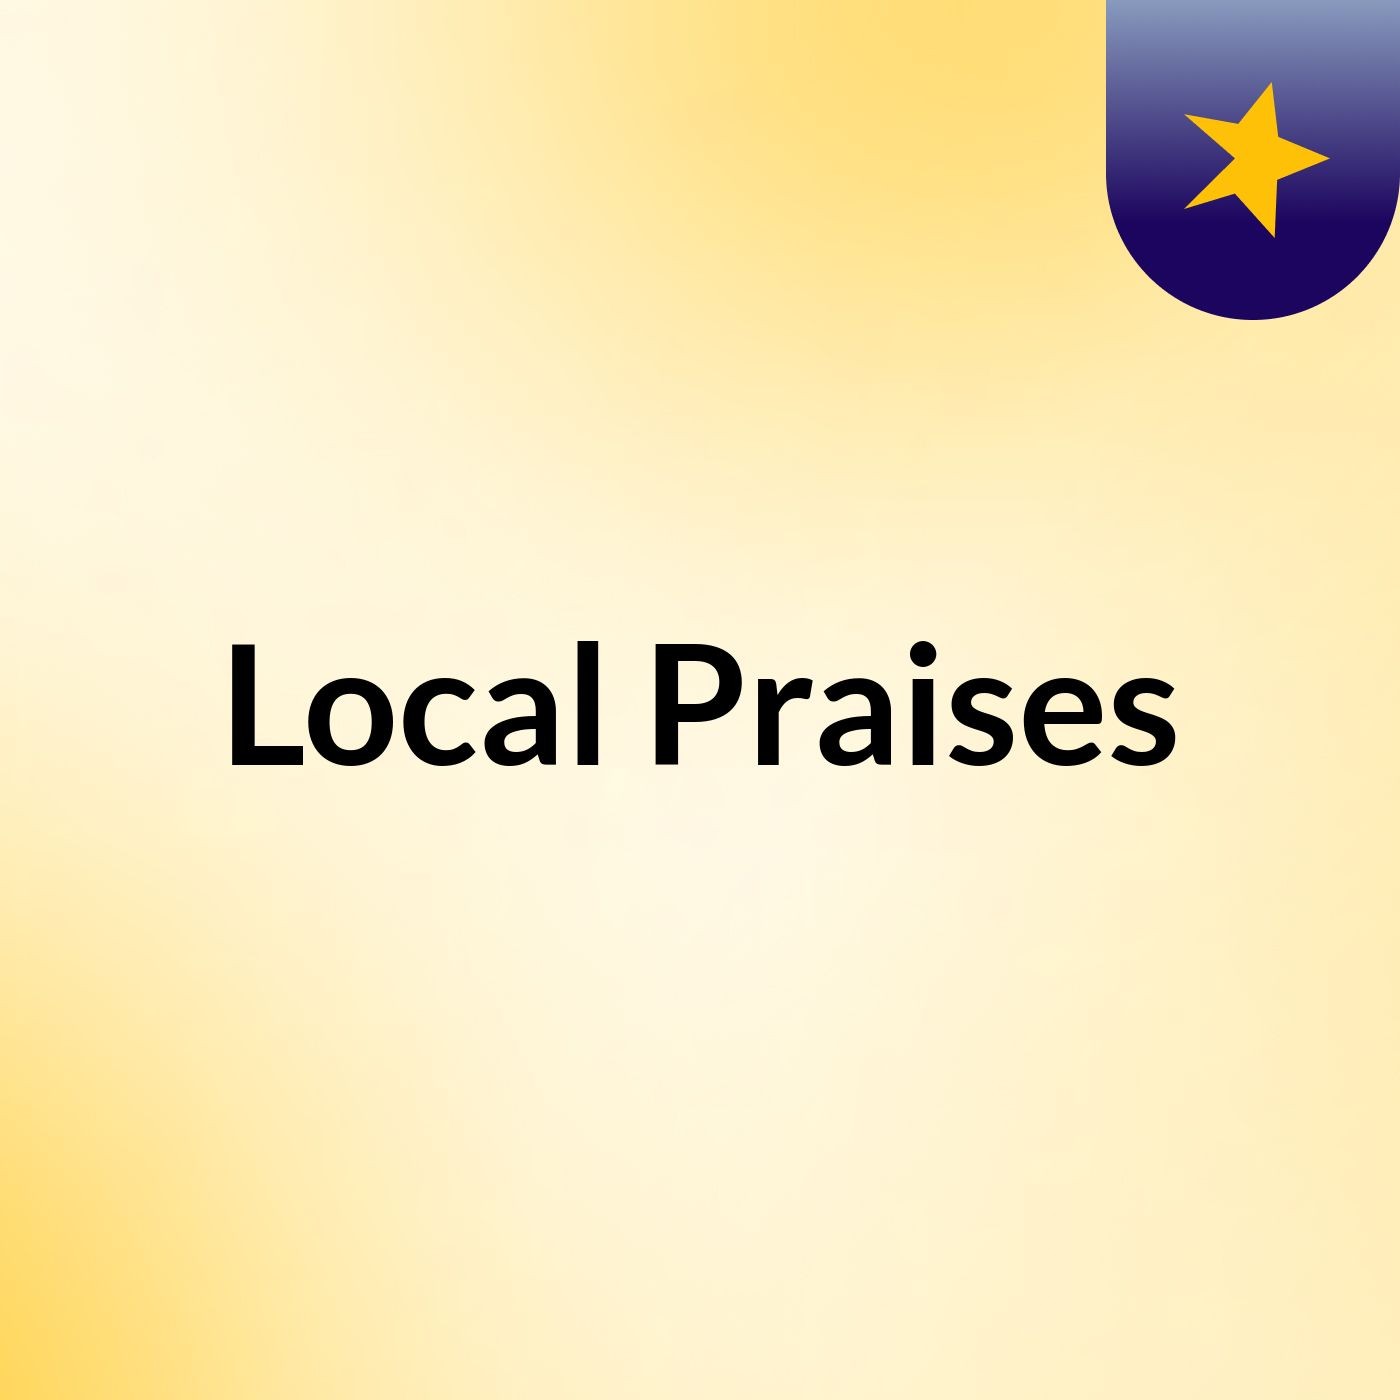 Local Praises